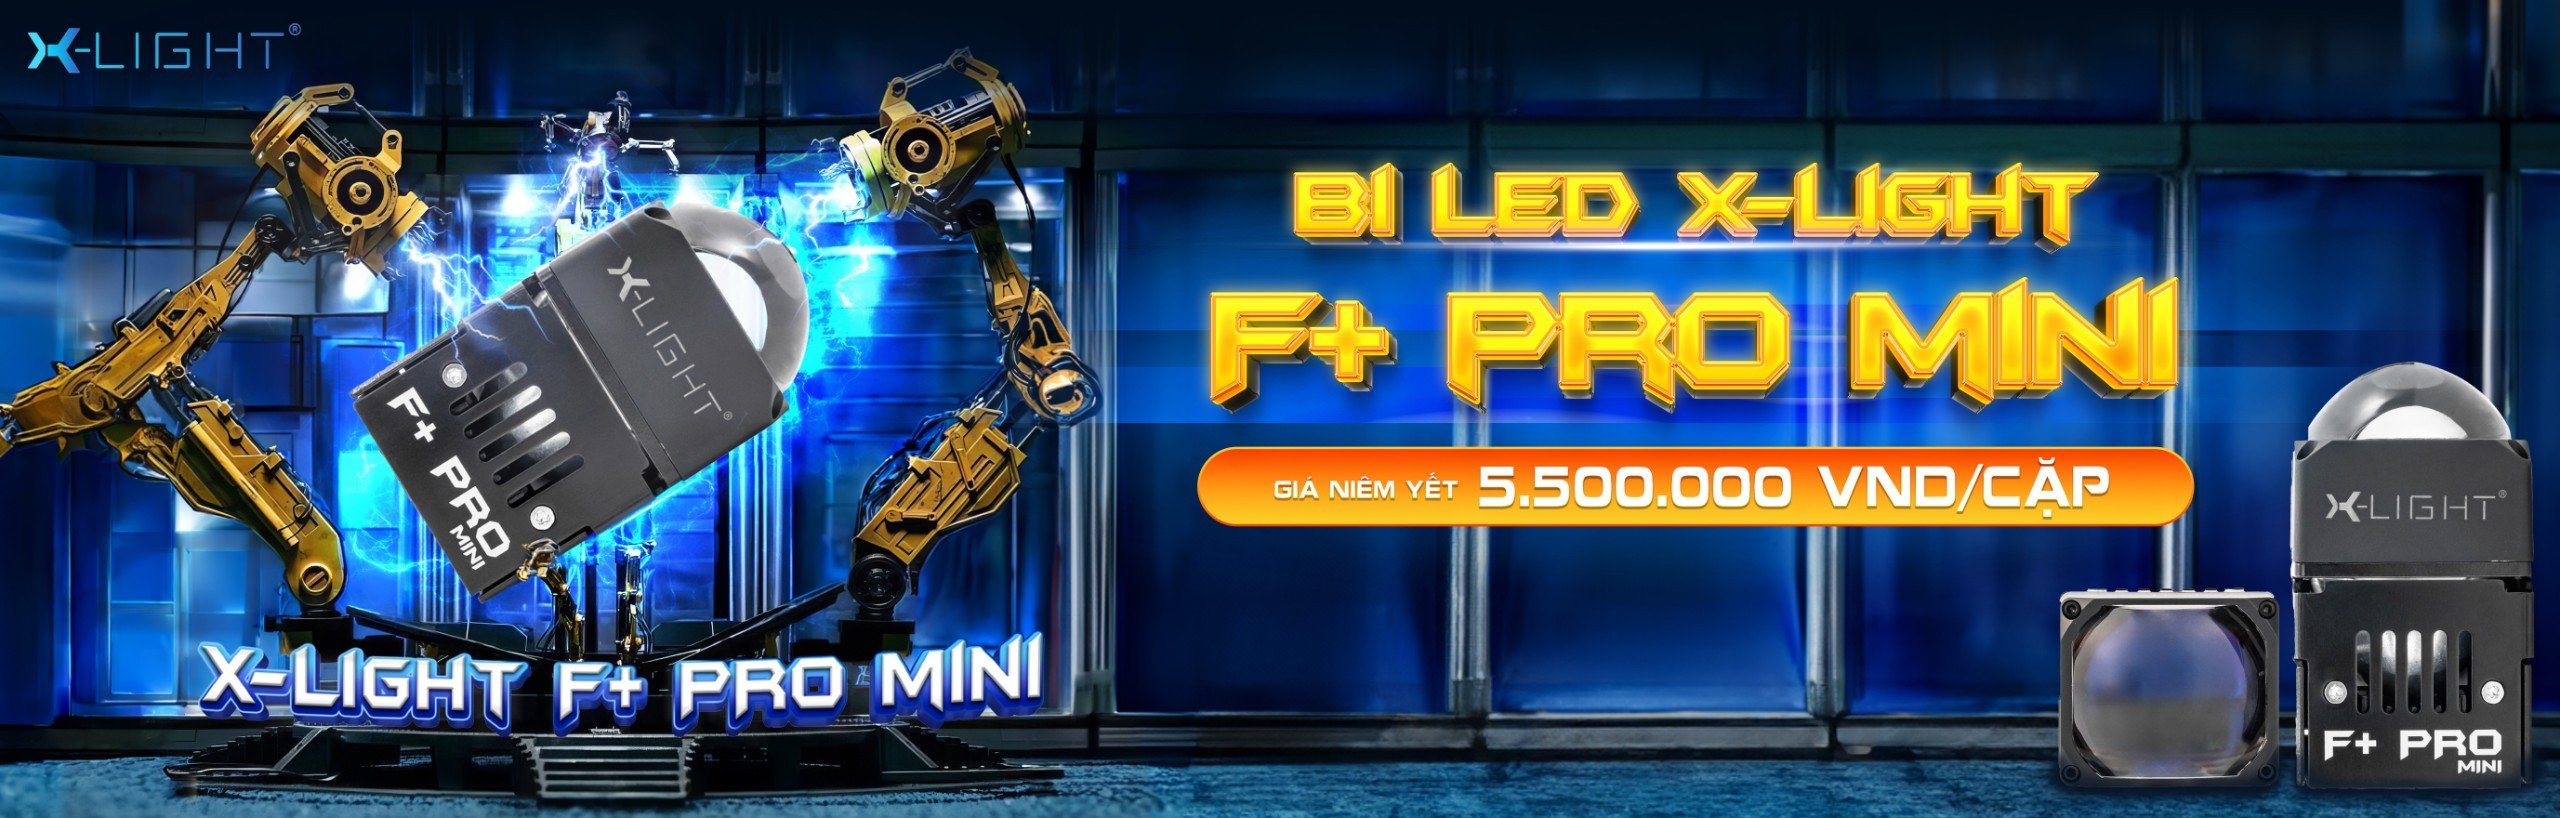 BI LED X-LIGHT F+ PRO MINI